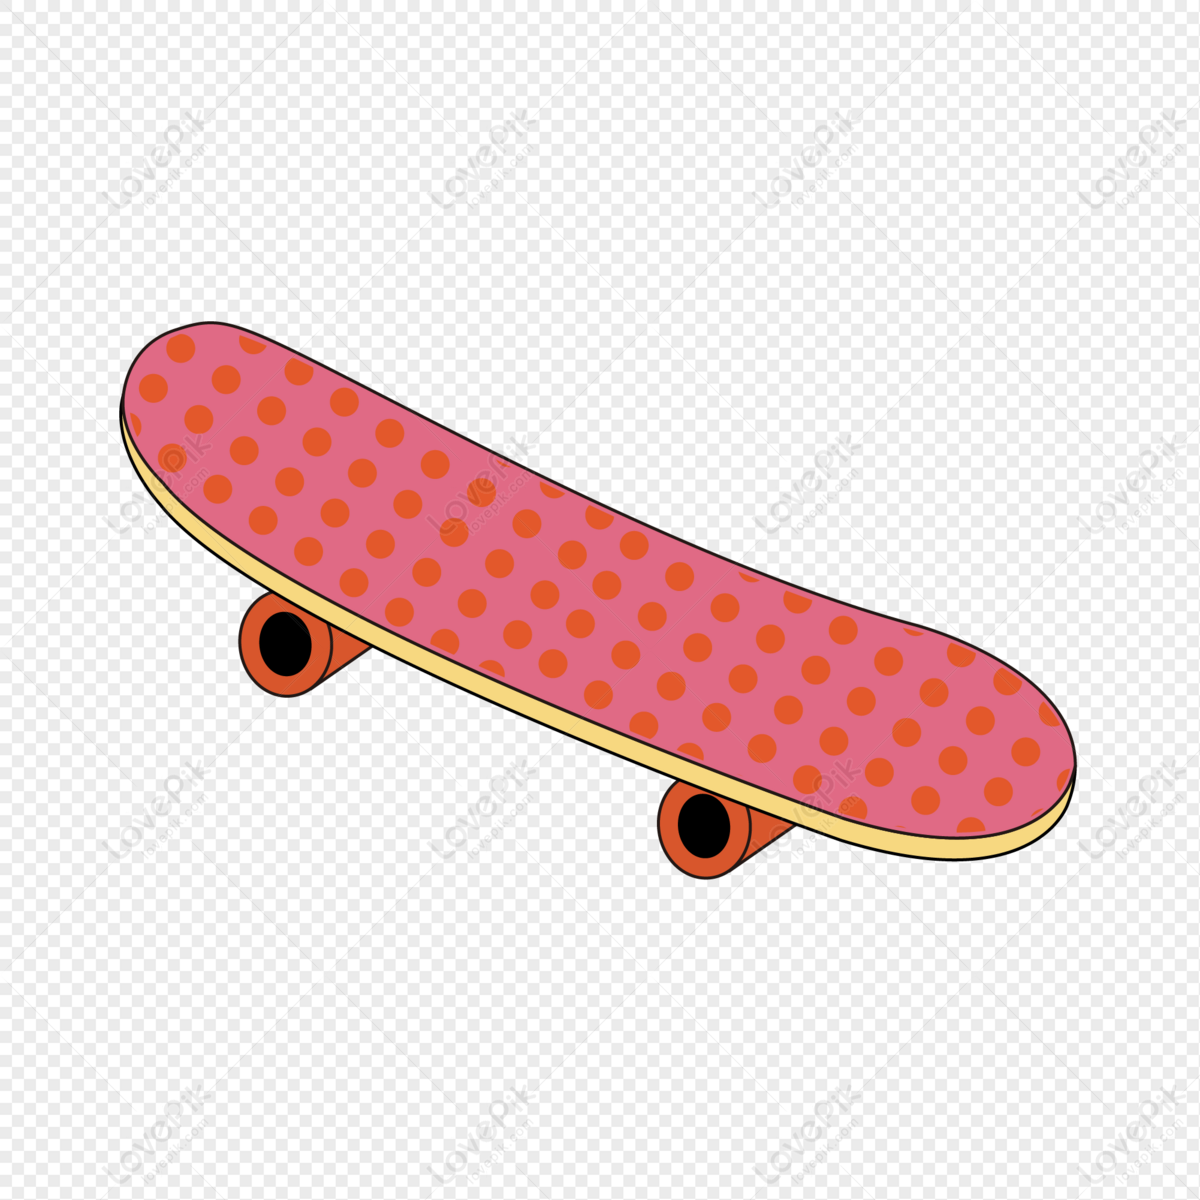 Skateboard PNG Hd Transparent Image Image For Free - Lovepik 401704084